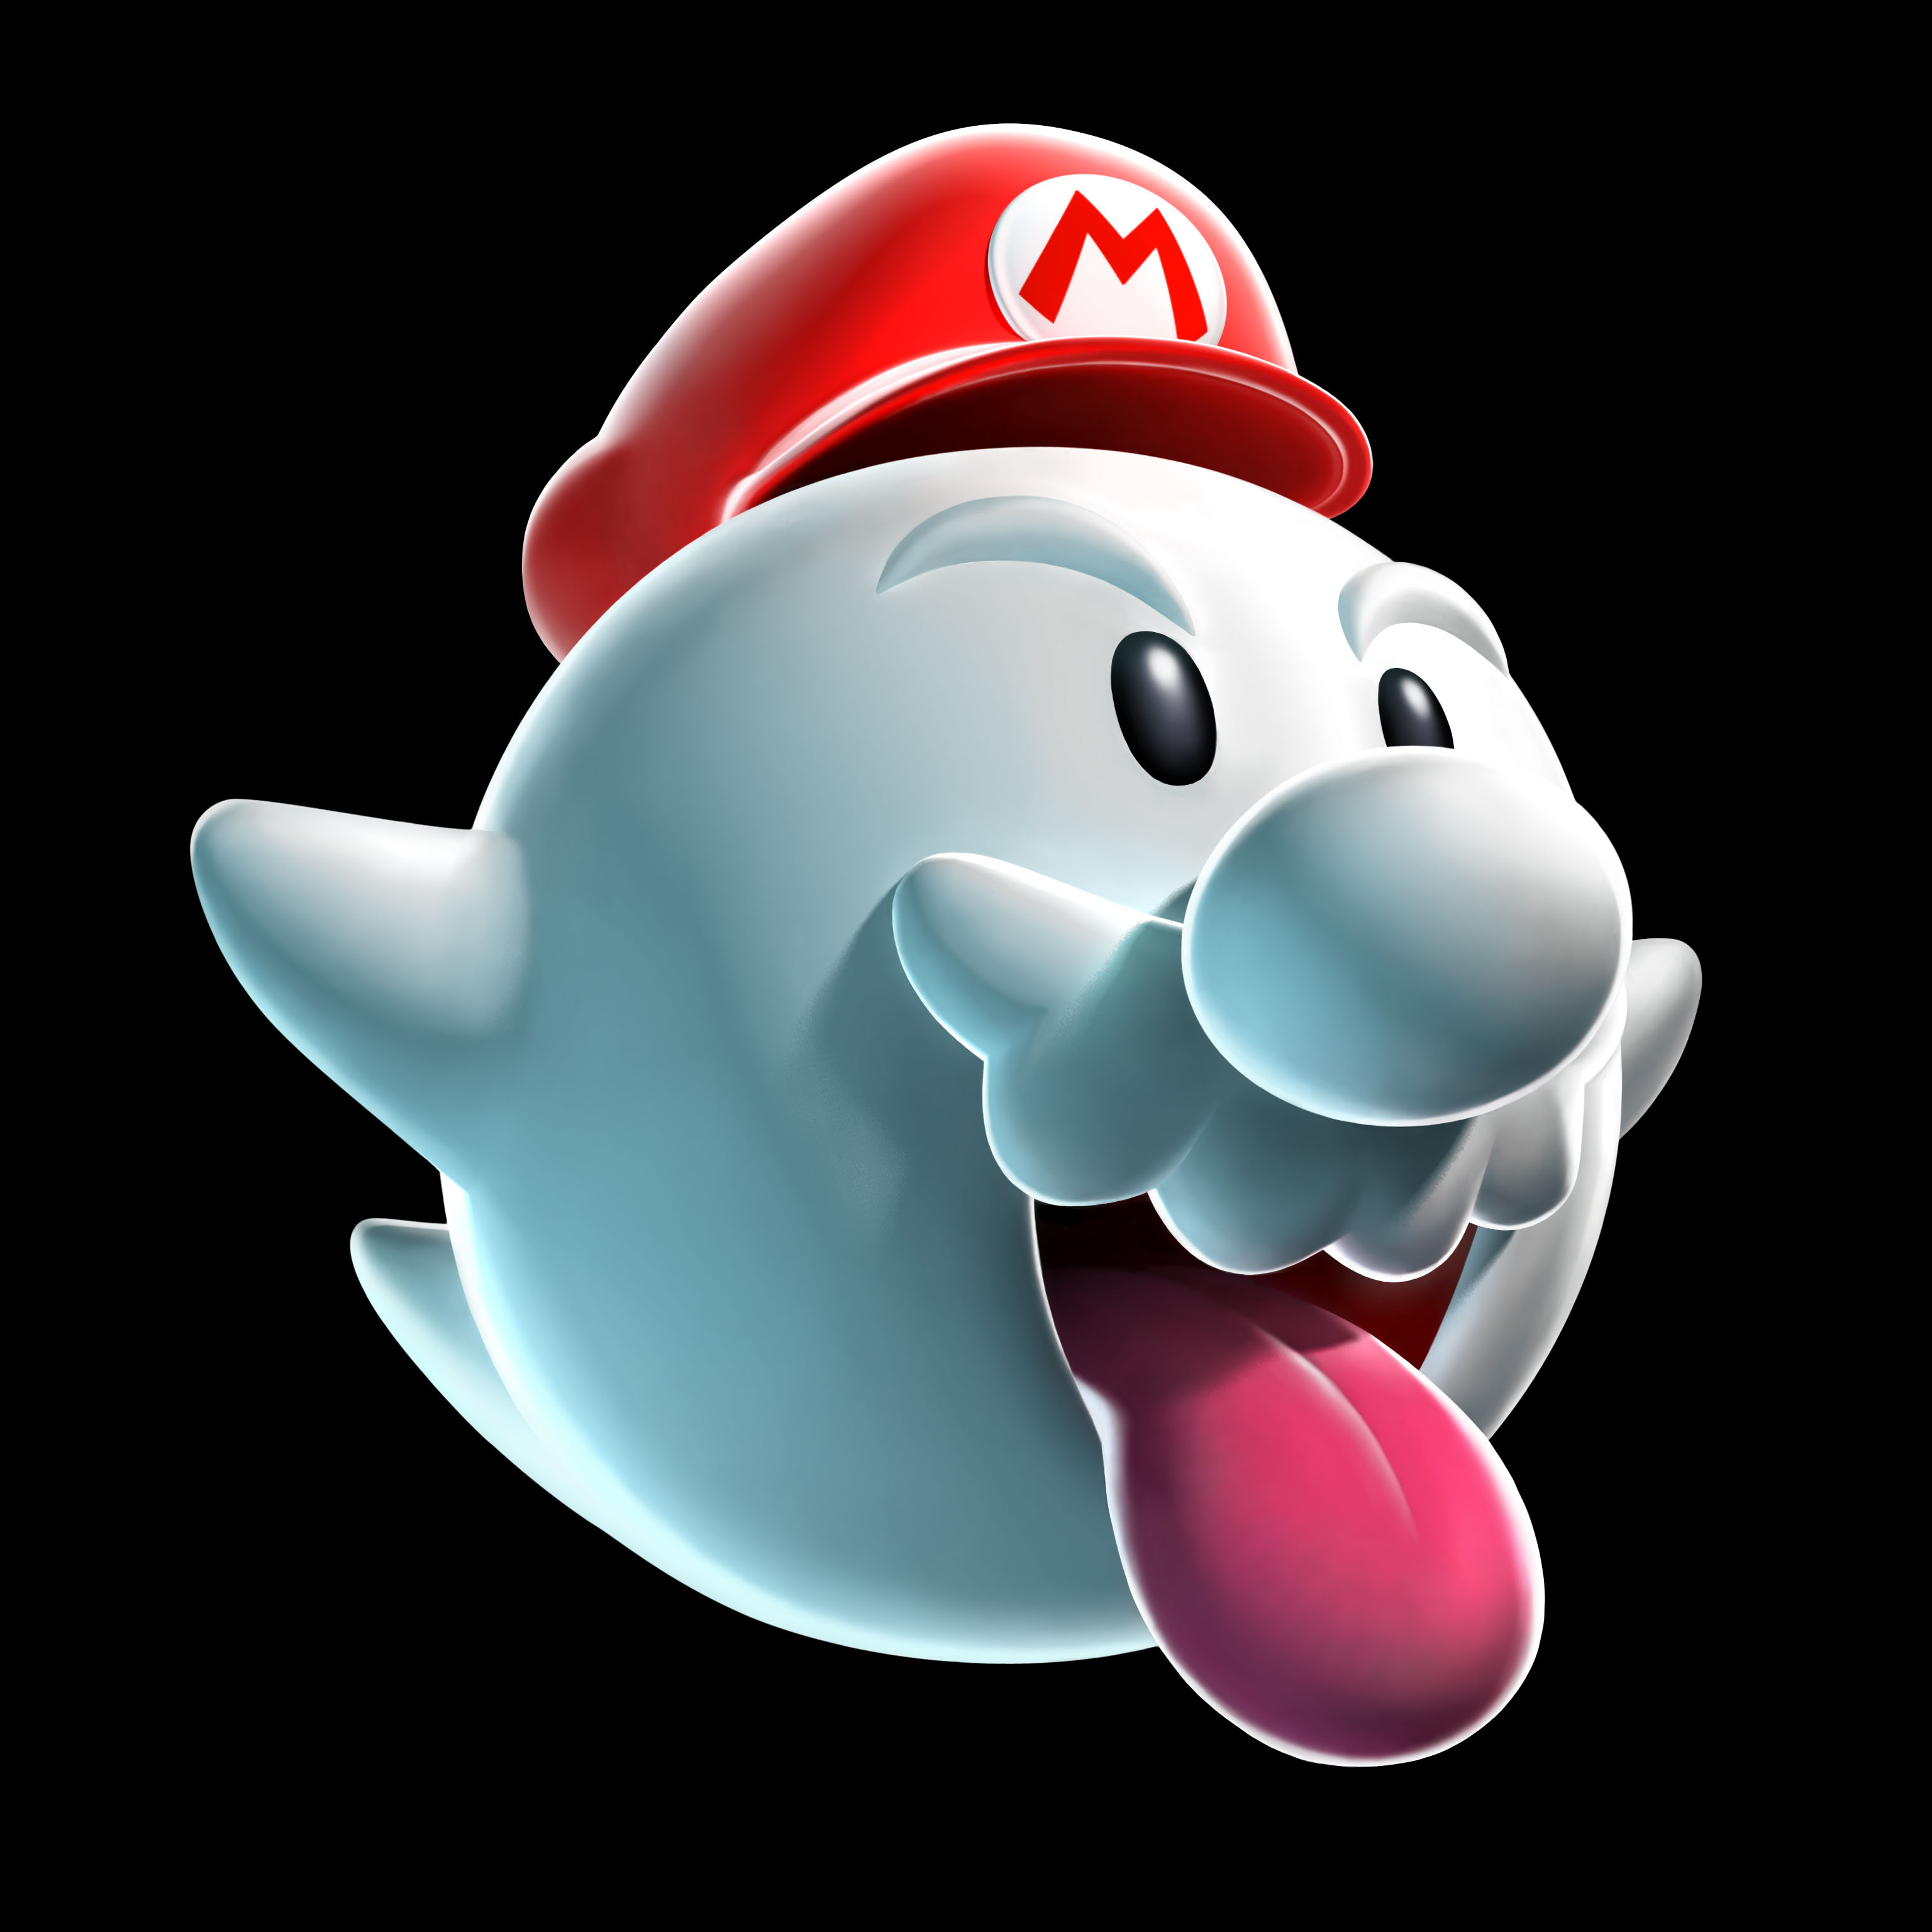 Super Mario Galaxy 2 Wii Games | Nintendo